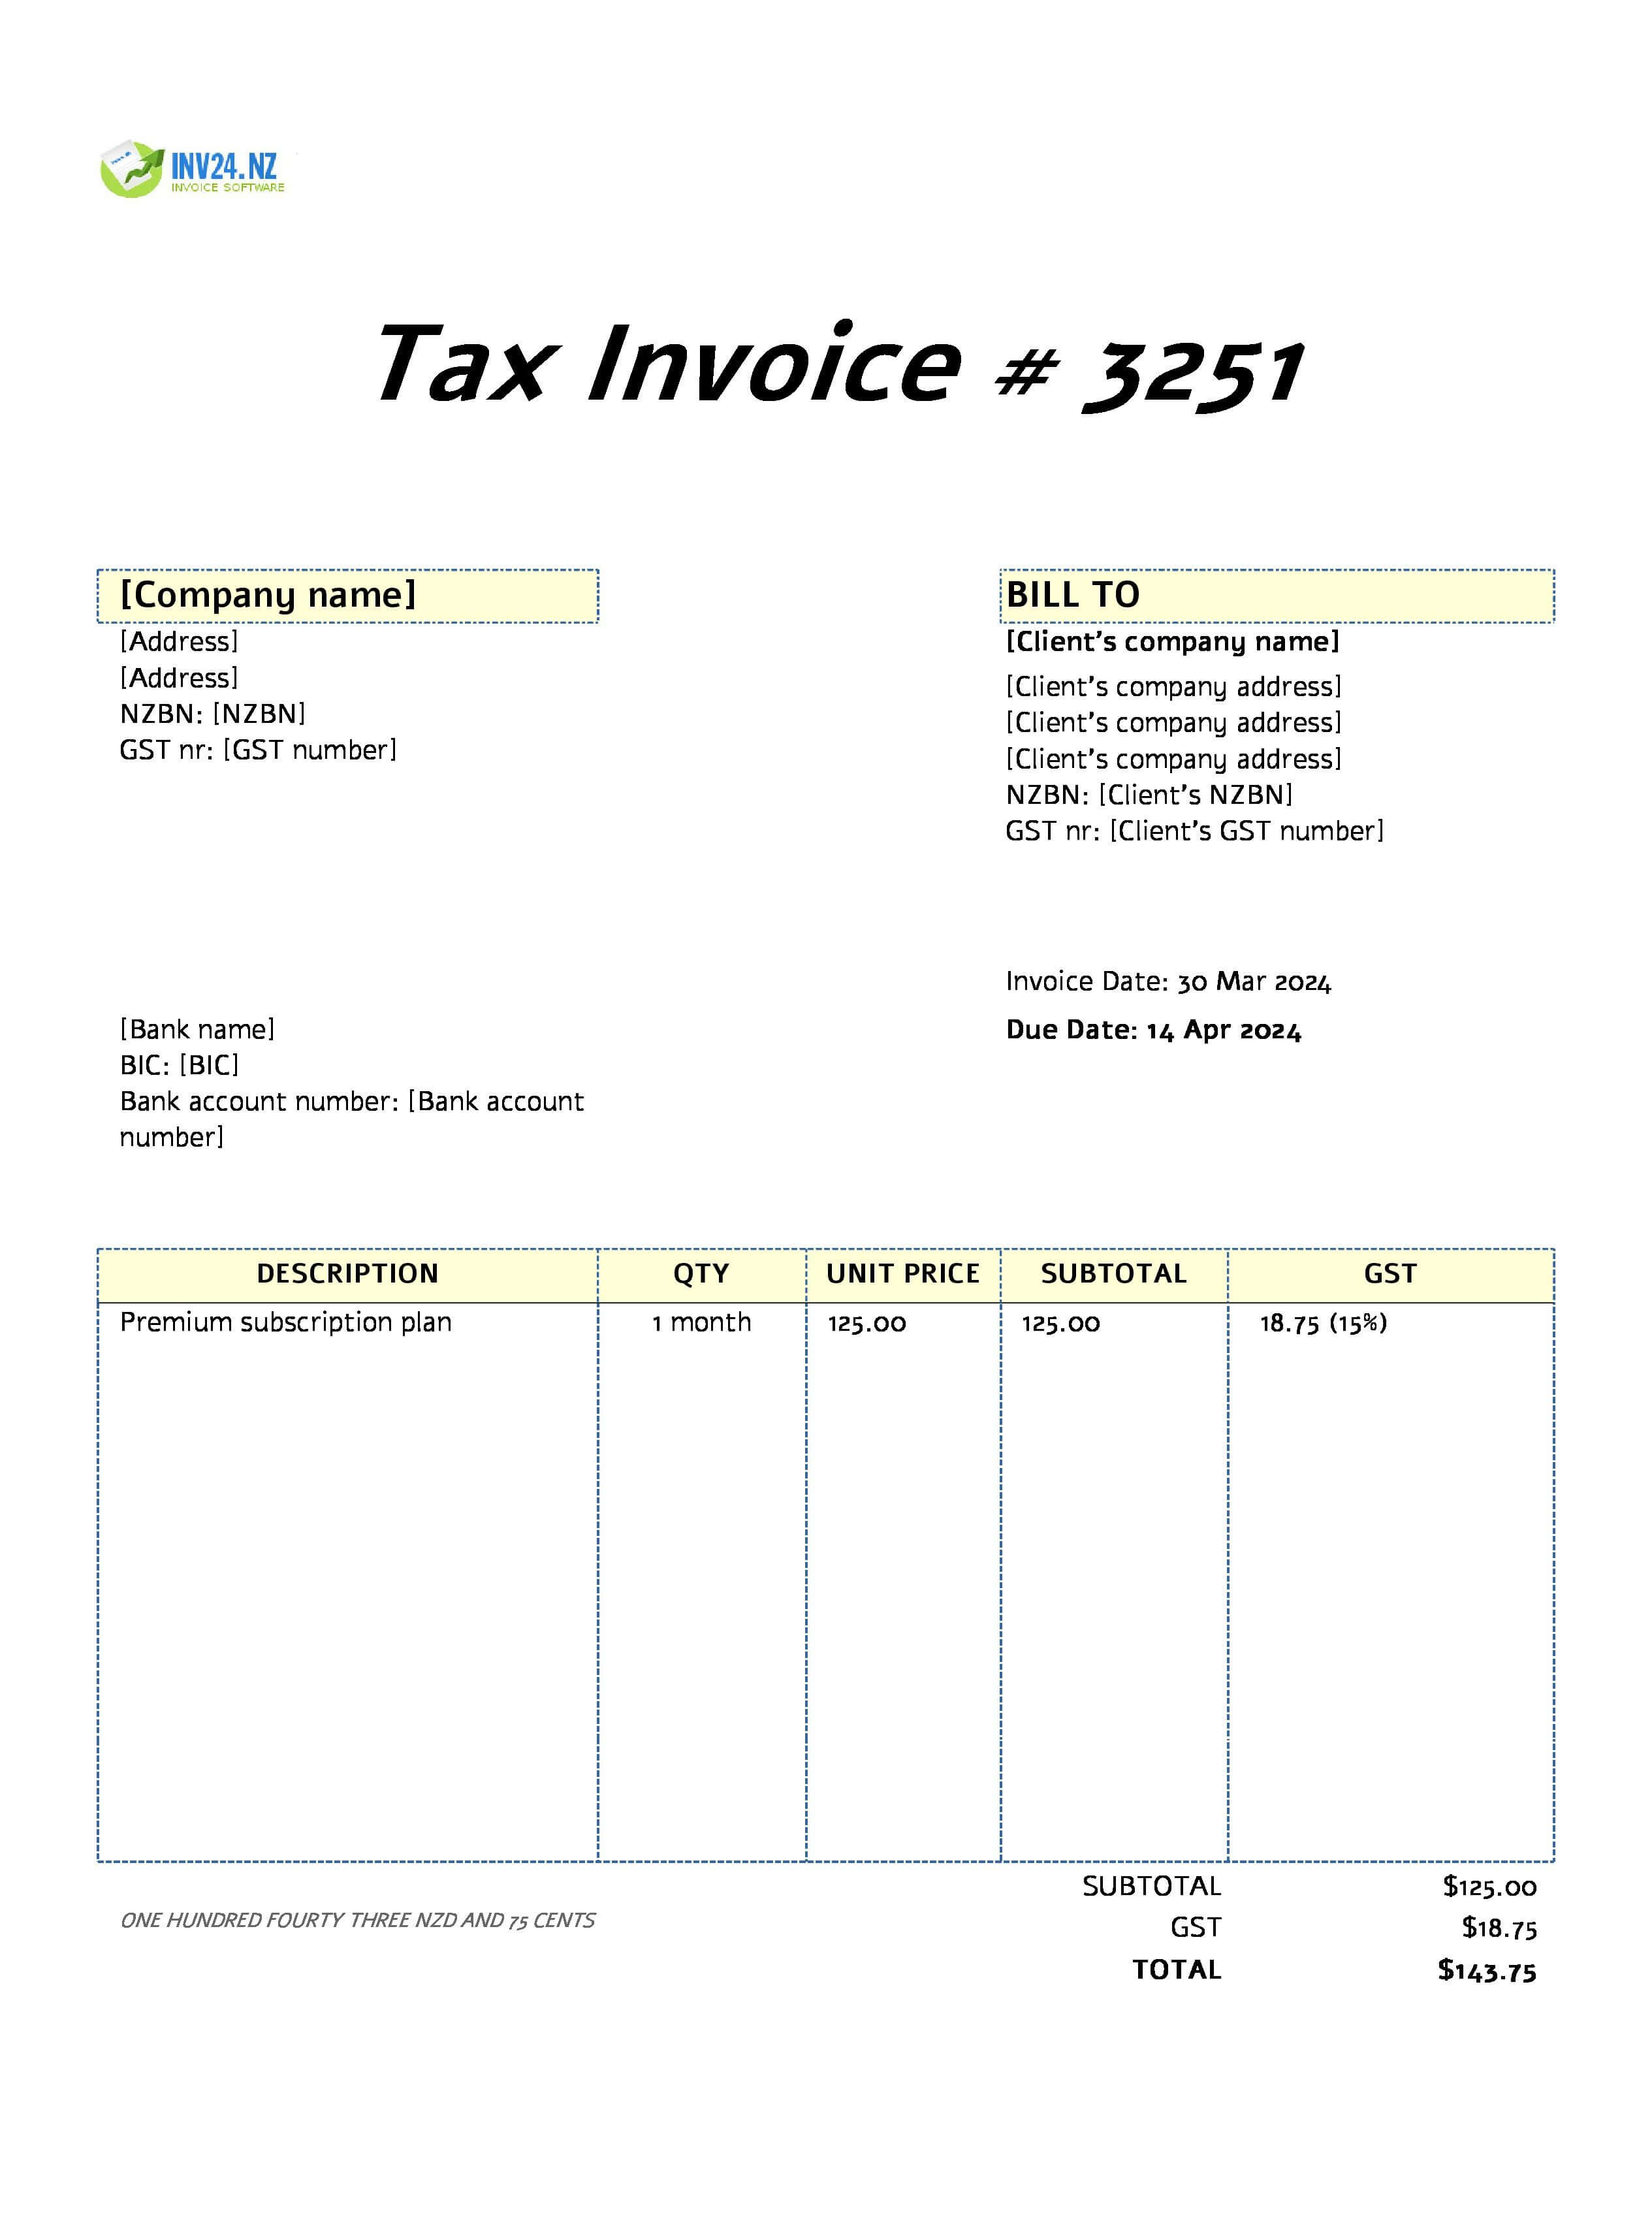 batch invoice example